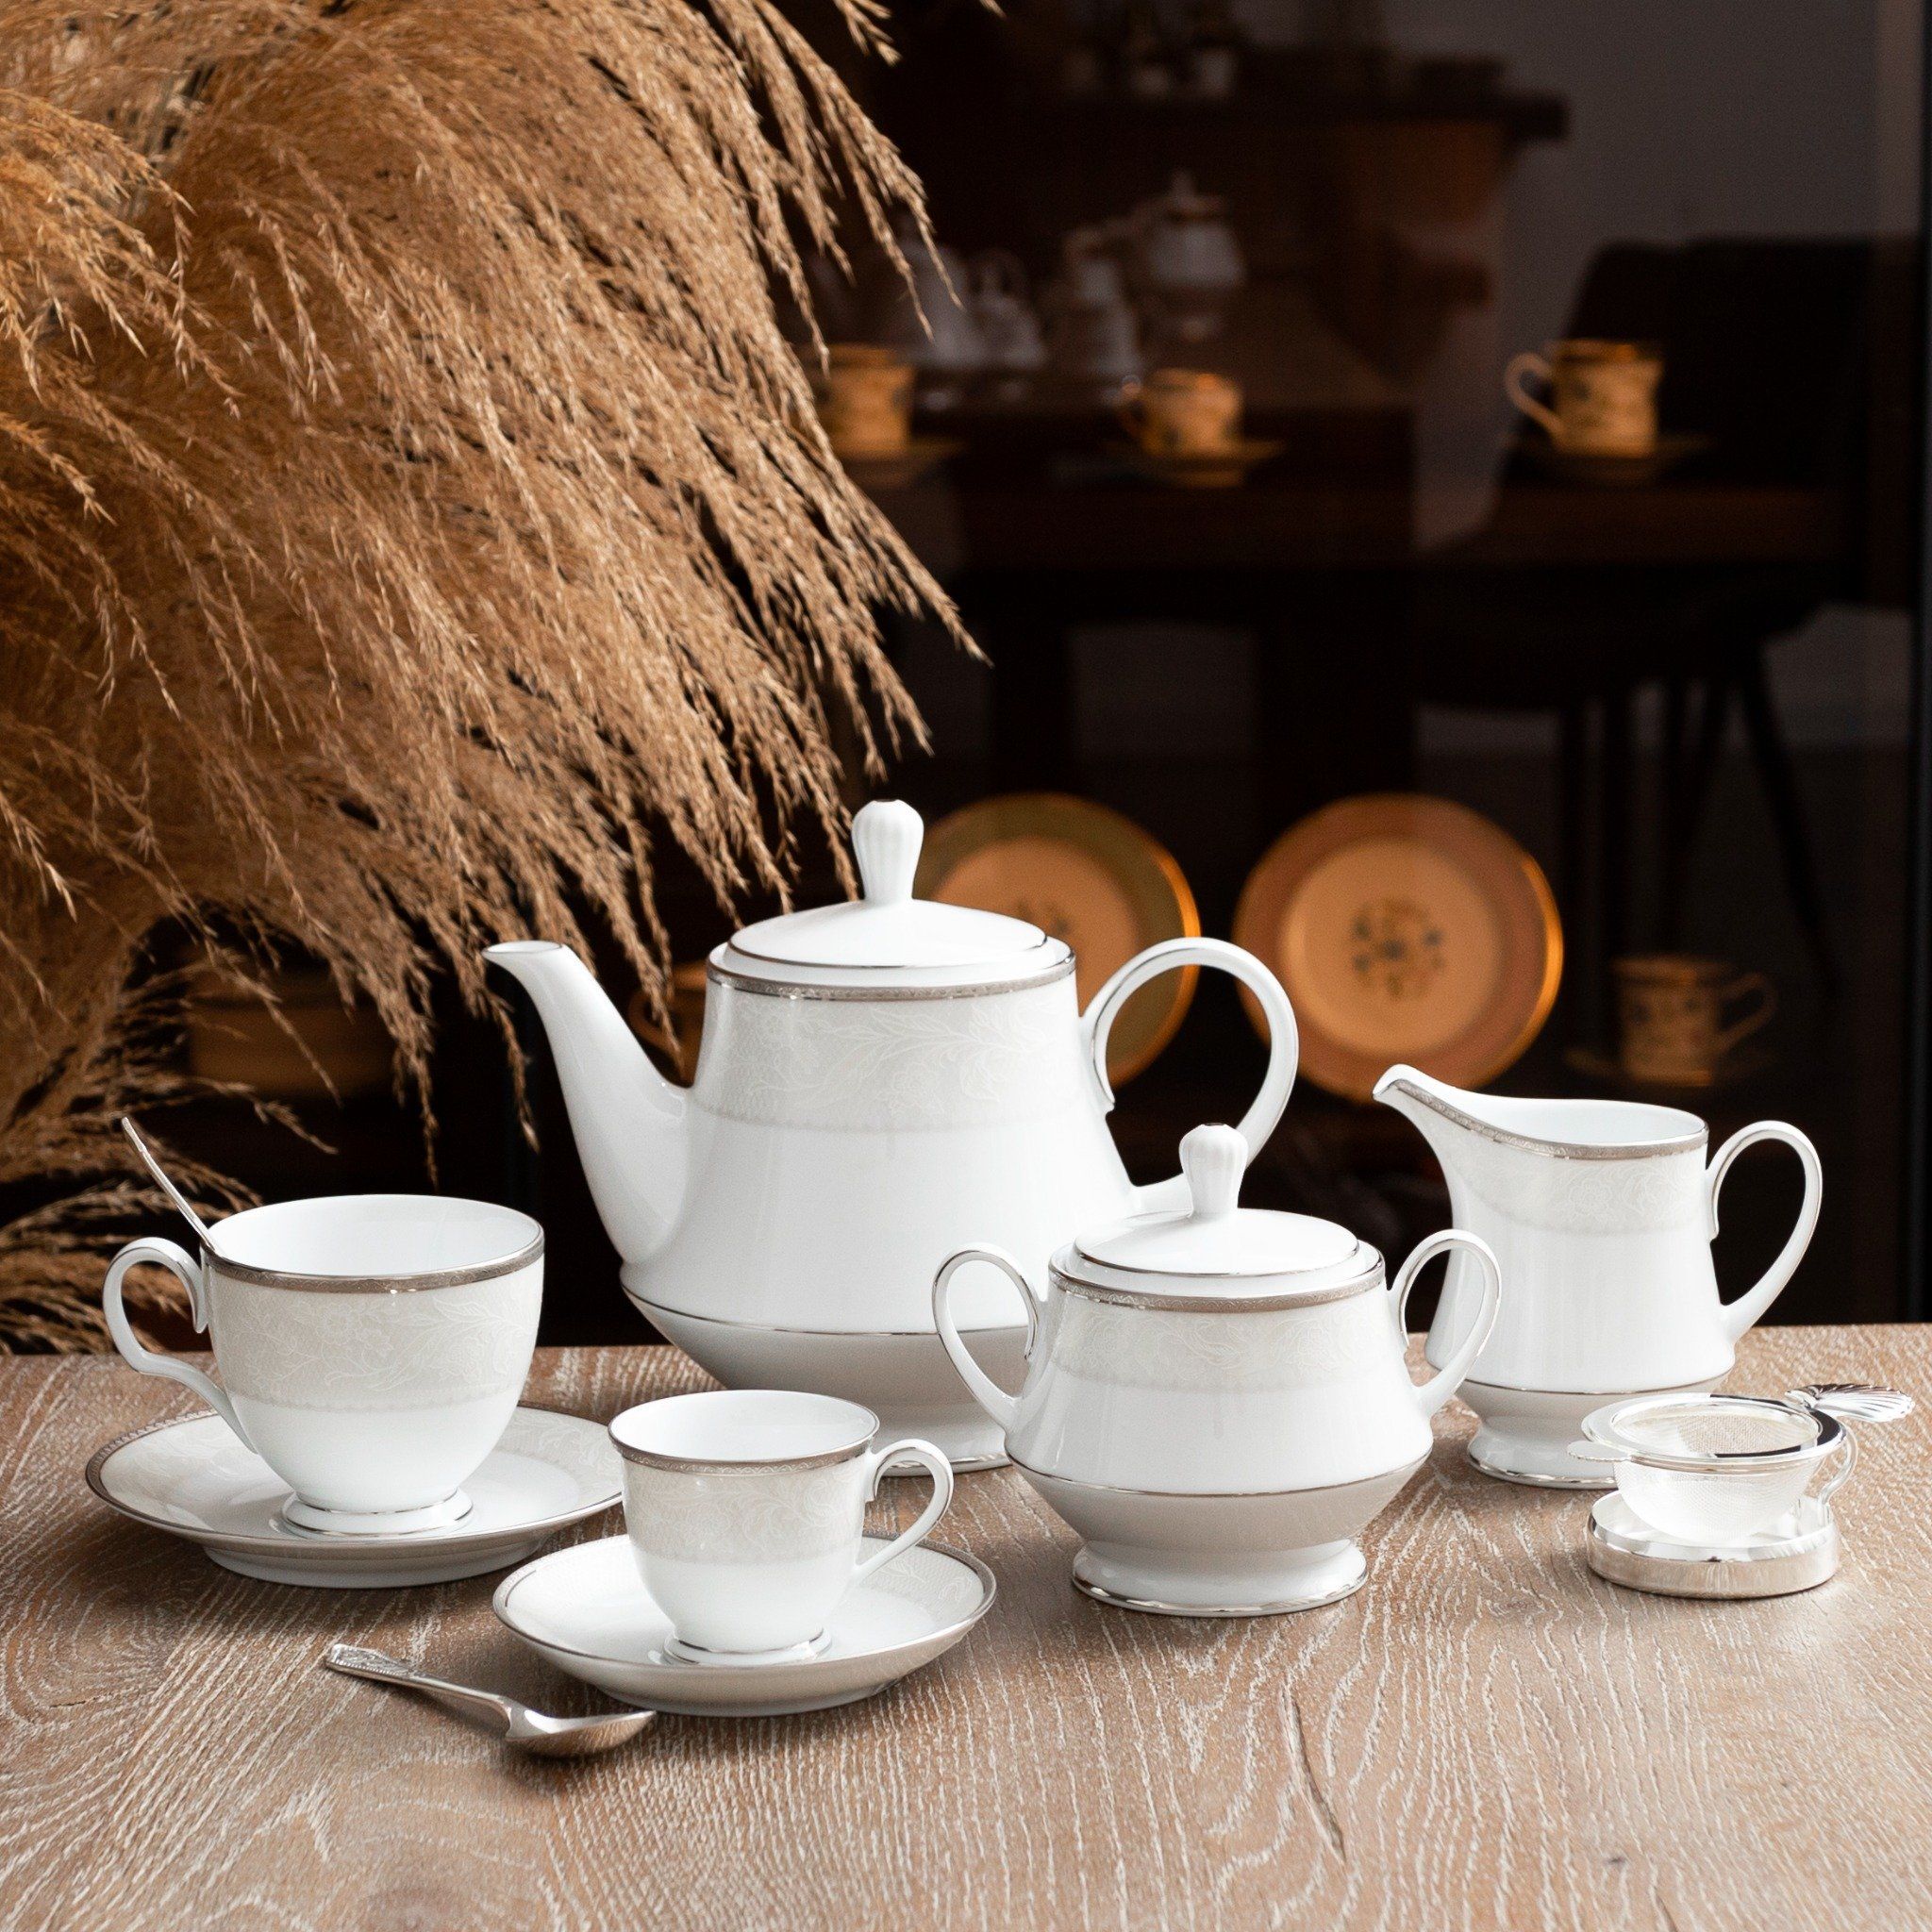  Bộ ấm chén uống trà sứ trắng 15 món (Bình trà 1.200ml) | Flanders Platinum 1715 